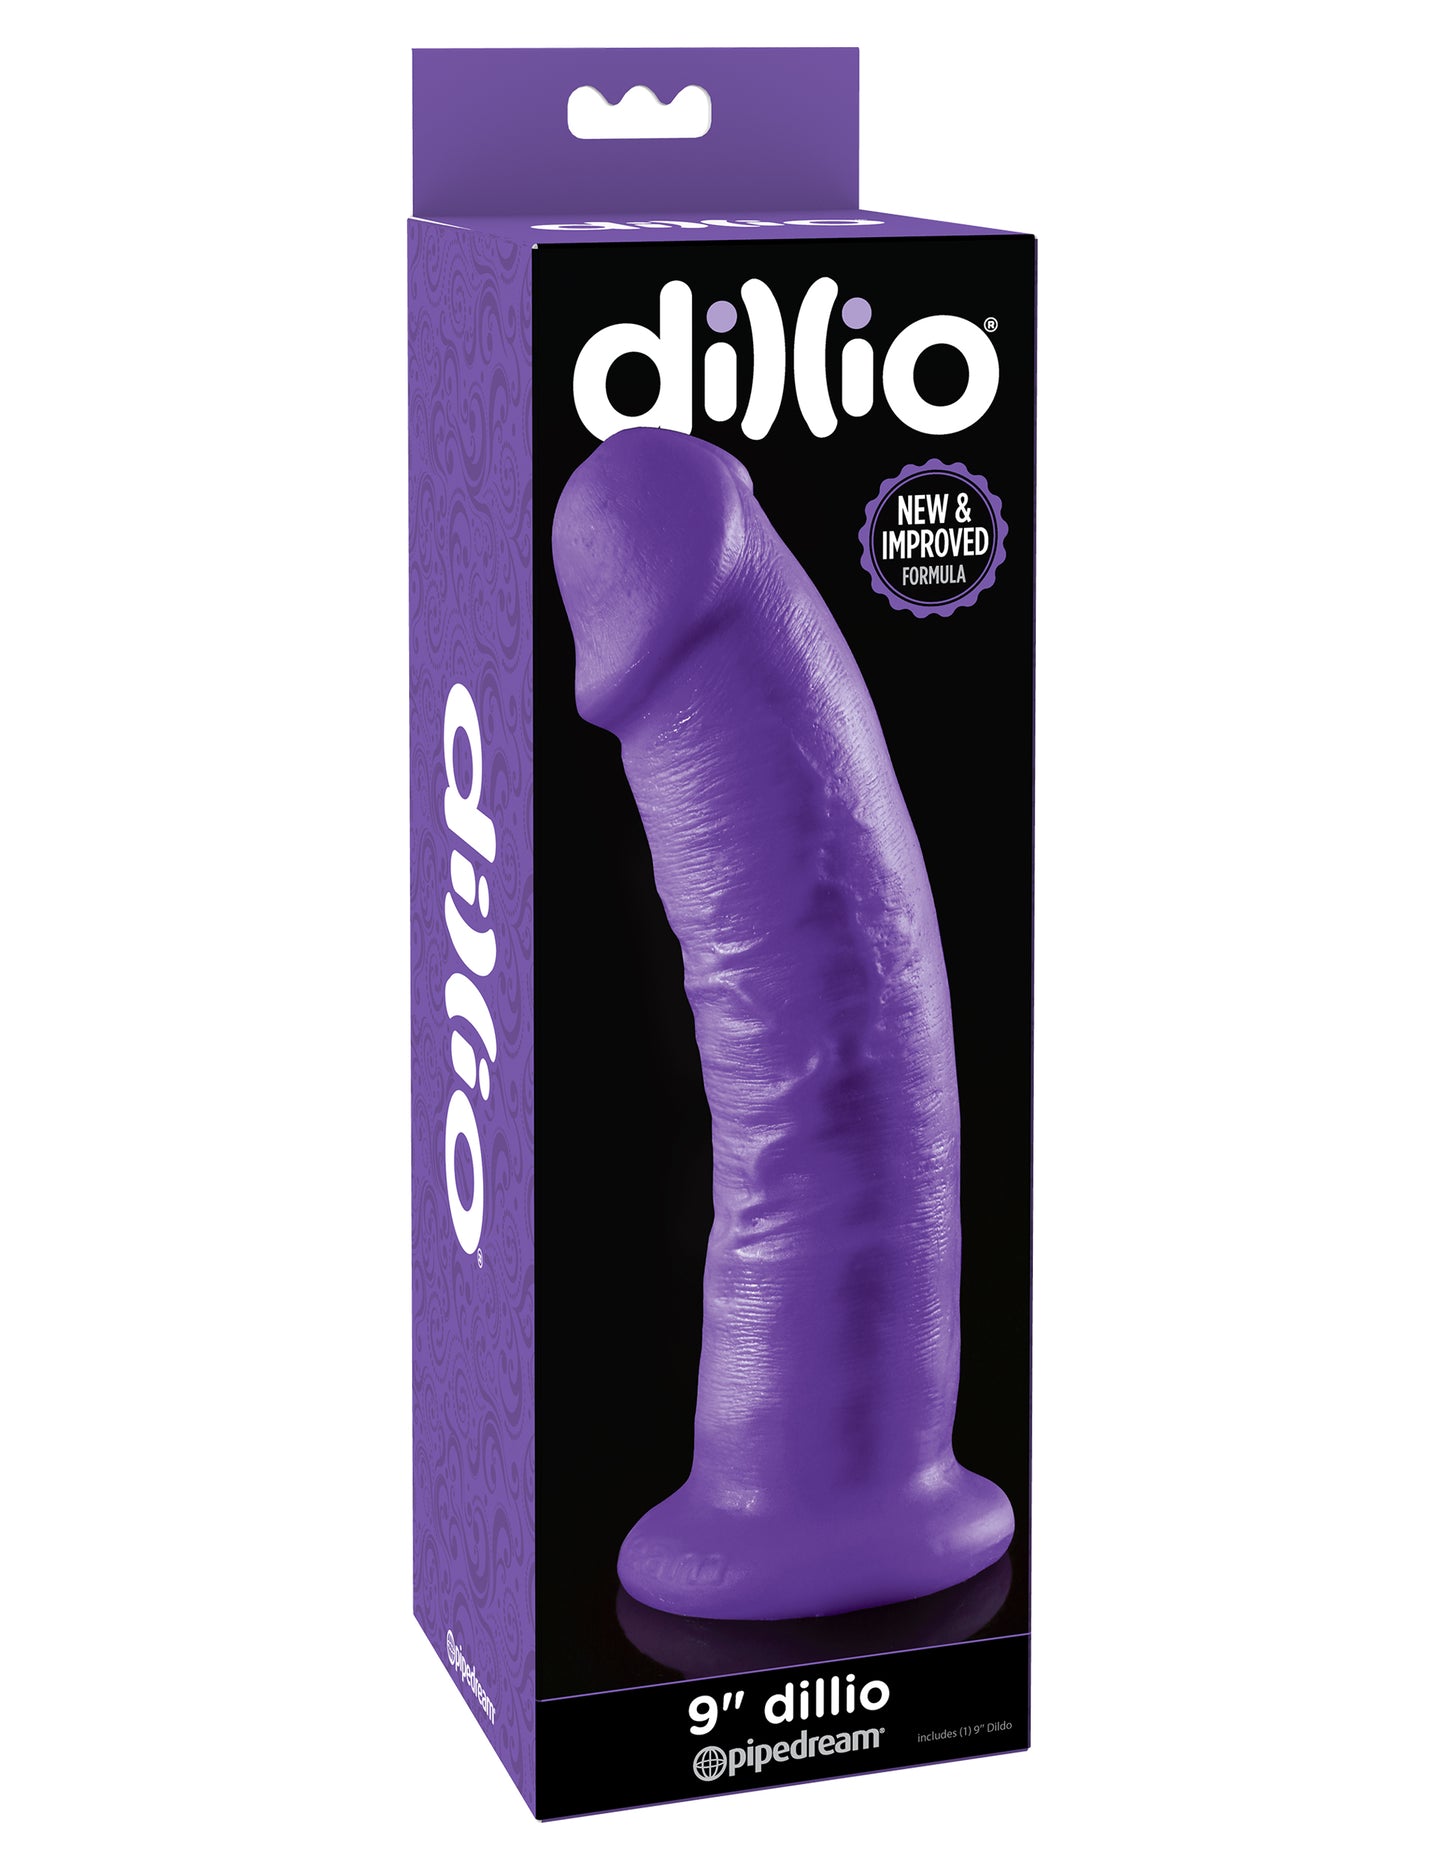 DILLIO - 9 INCH DILDO